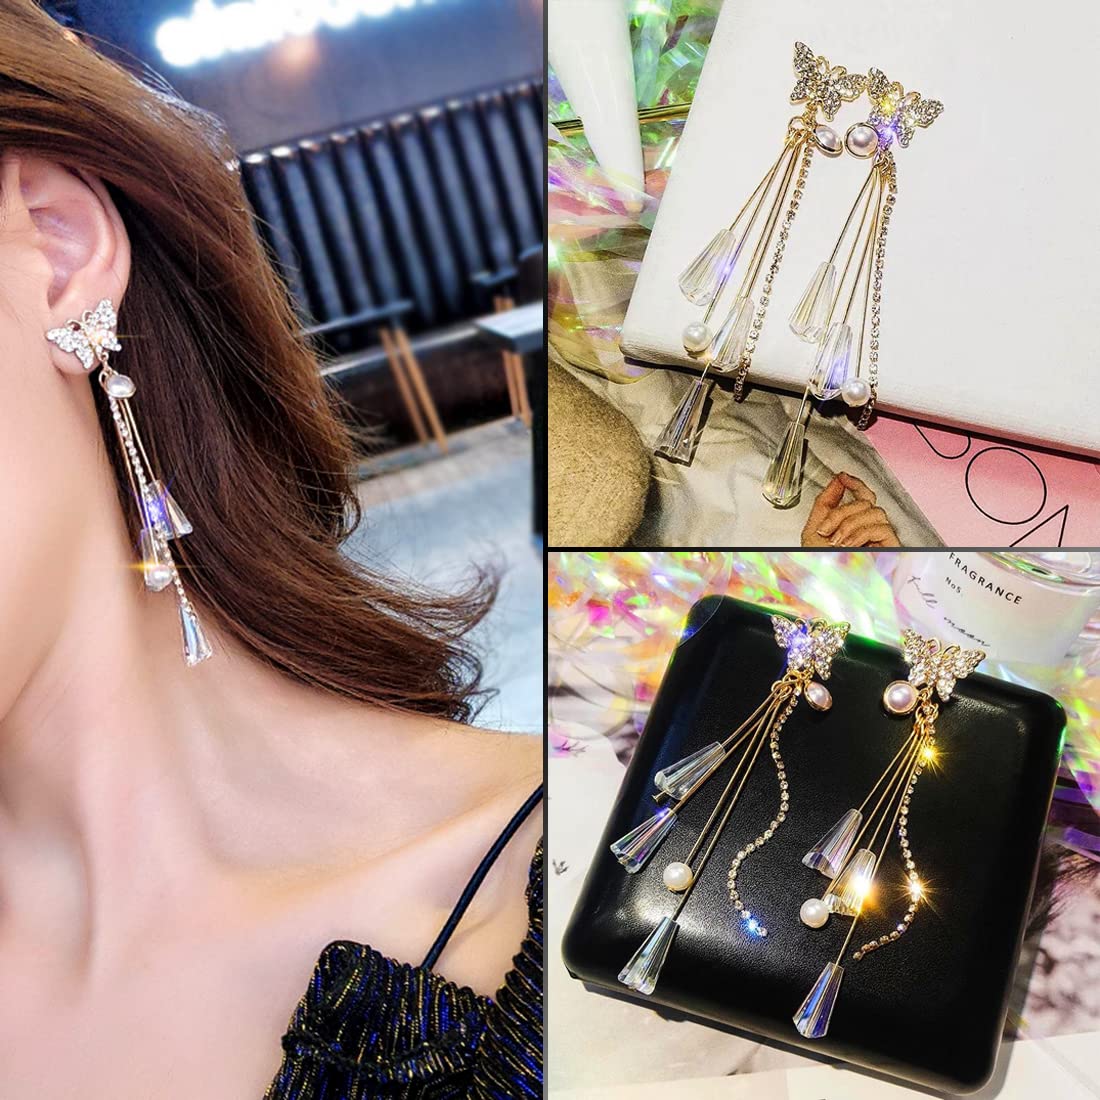 American Diamond Earrings - Chandelier Earrings - Long Earrings for Girls -  Nova Chandelier Earrings by Blingvine